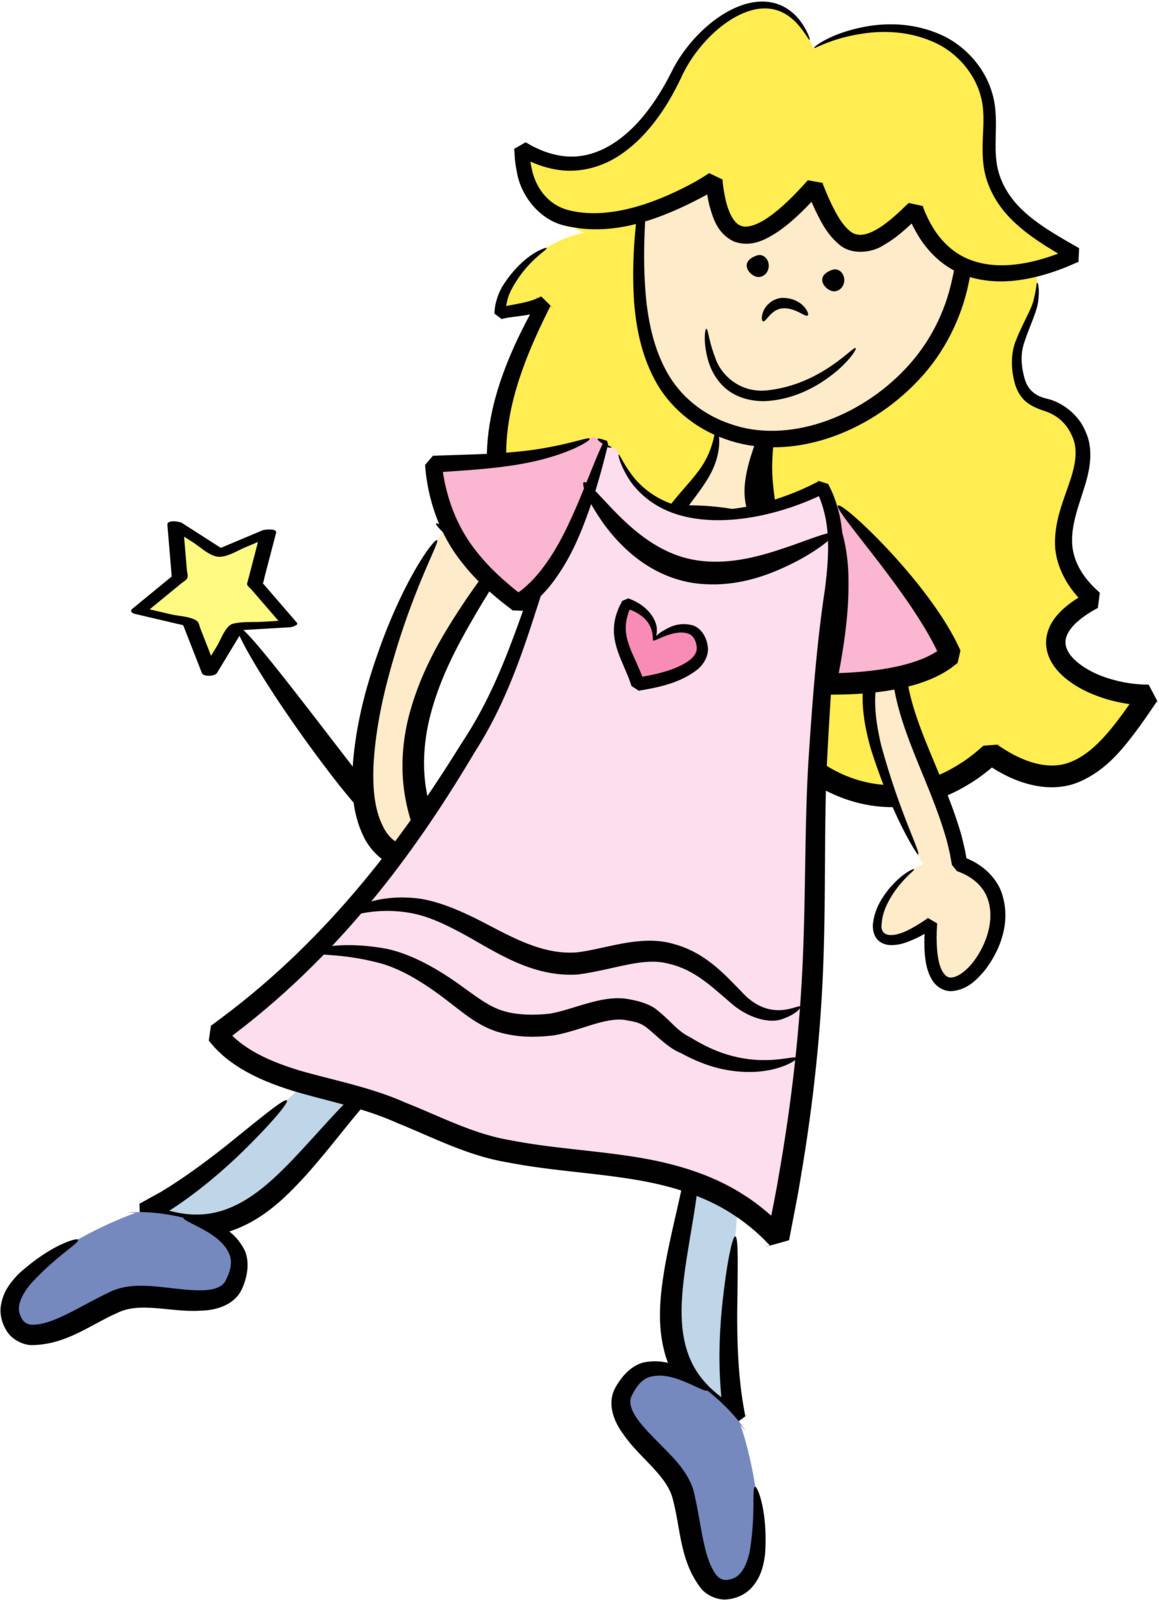 Cute little blond cartoon girl pretending to be a fairy